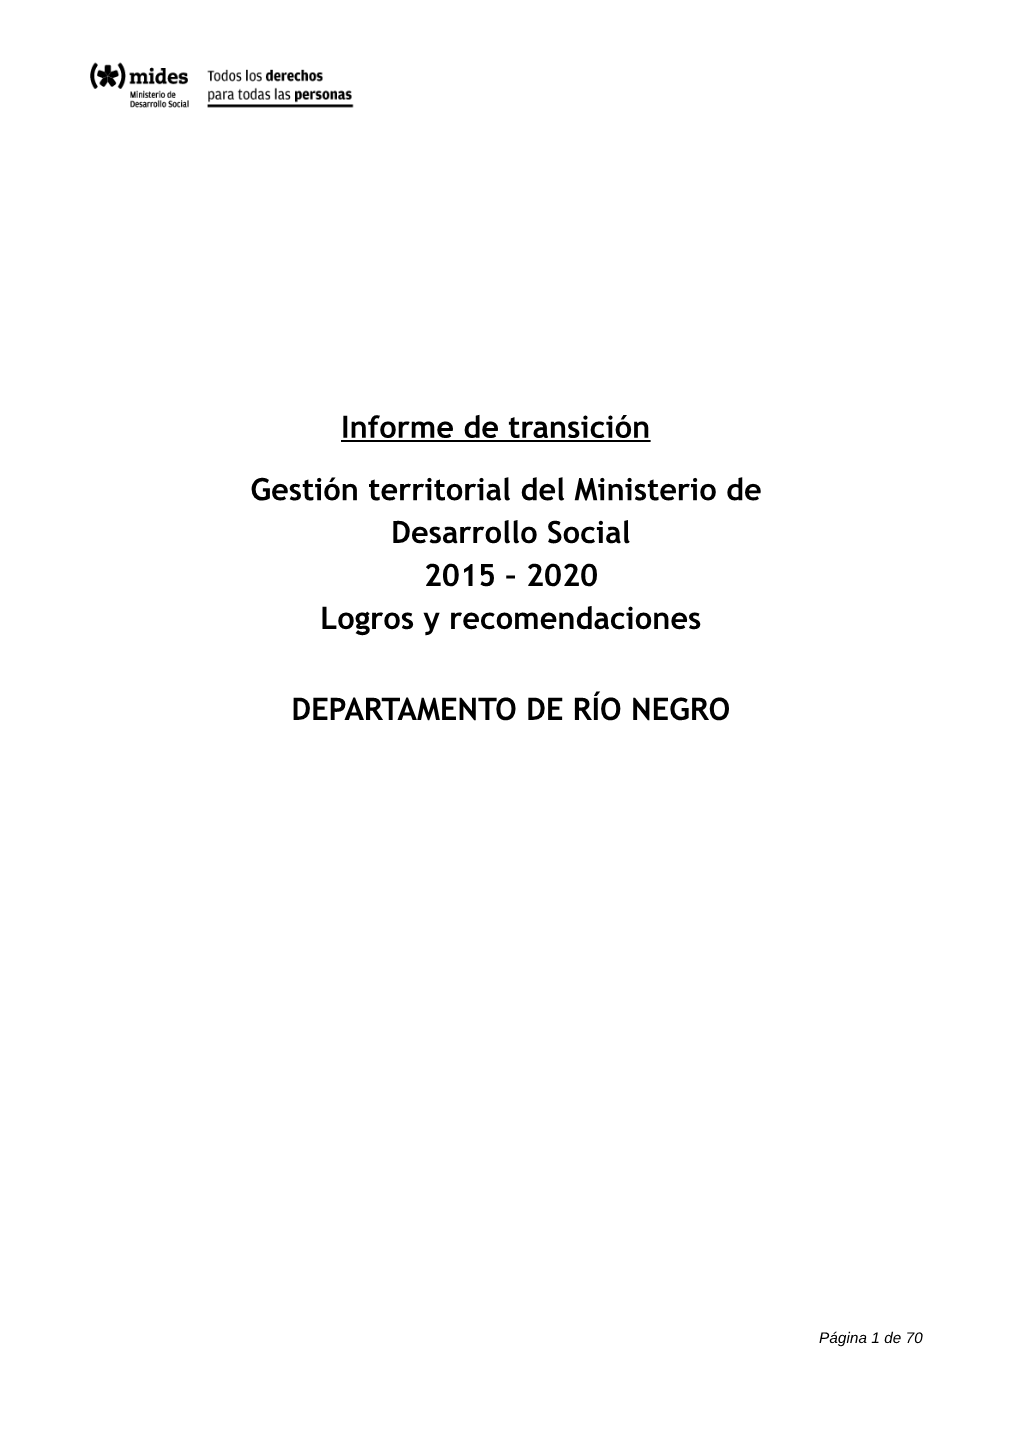 Informe De Transición. Departamento De Río Negro